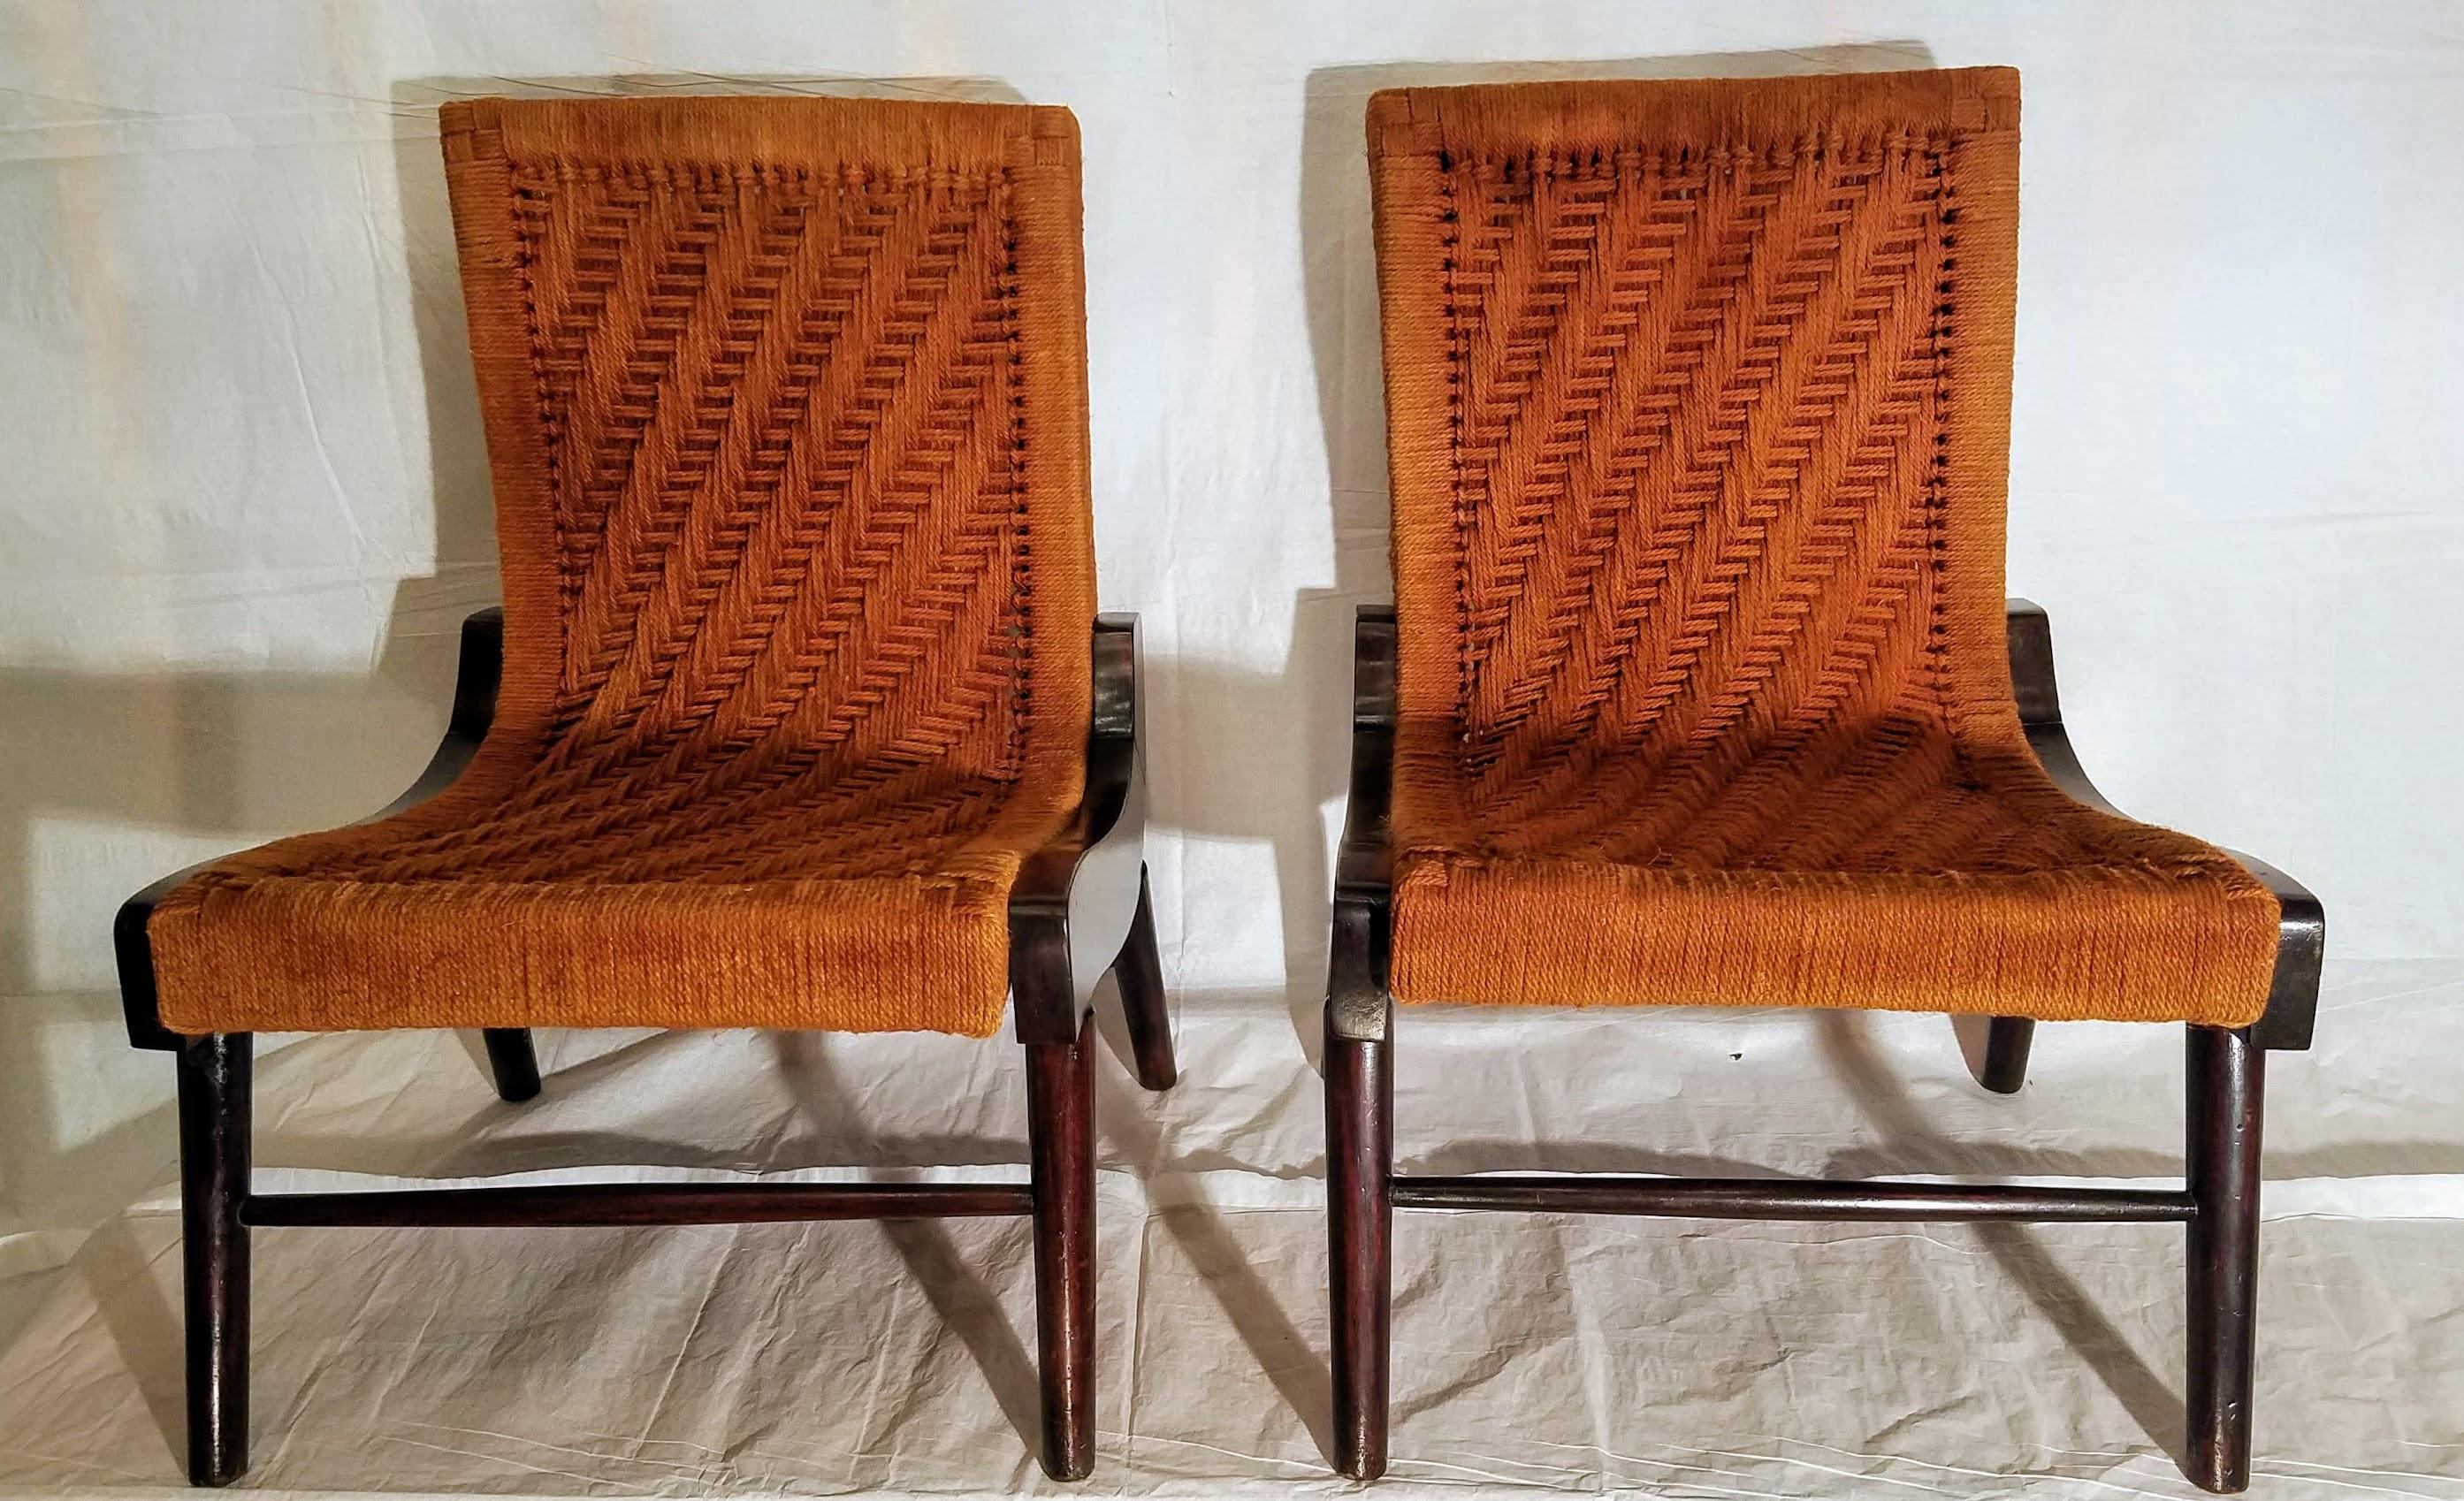 Paire de rares chaises longues sud-américaines en bois de rose et cocobolo, enveloppées dans une corde de chanvre en forme de chevrons.
Les chaises ont été ramenées en Virginie par un officier de l'OSS en poste en Amérique centrale pendant la